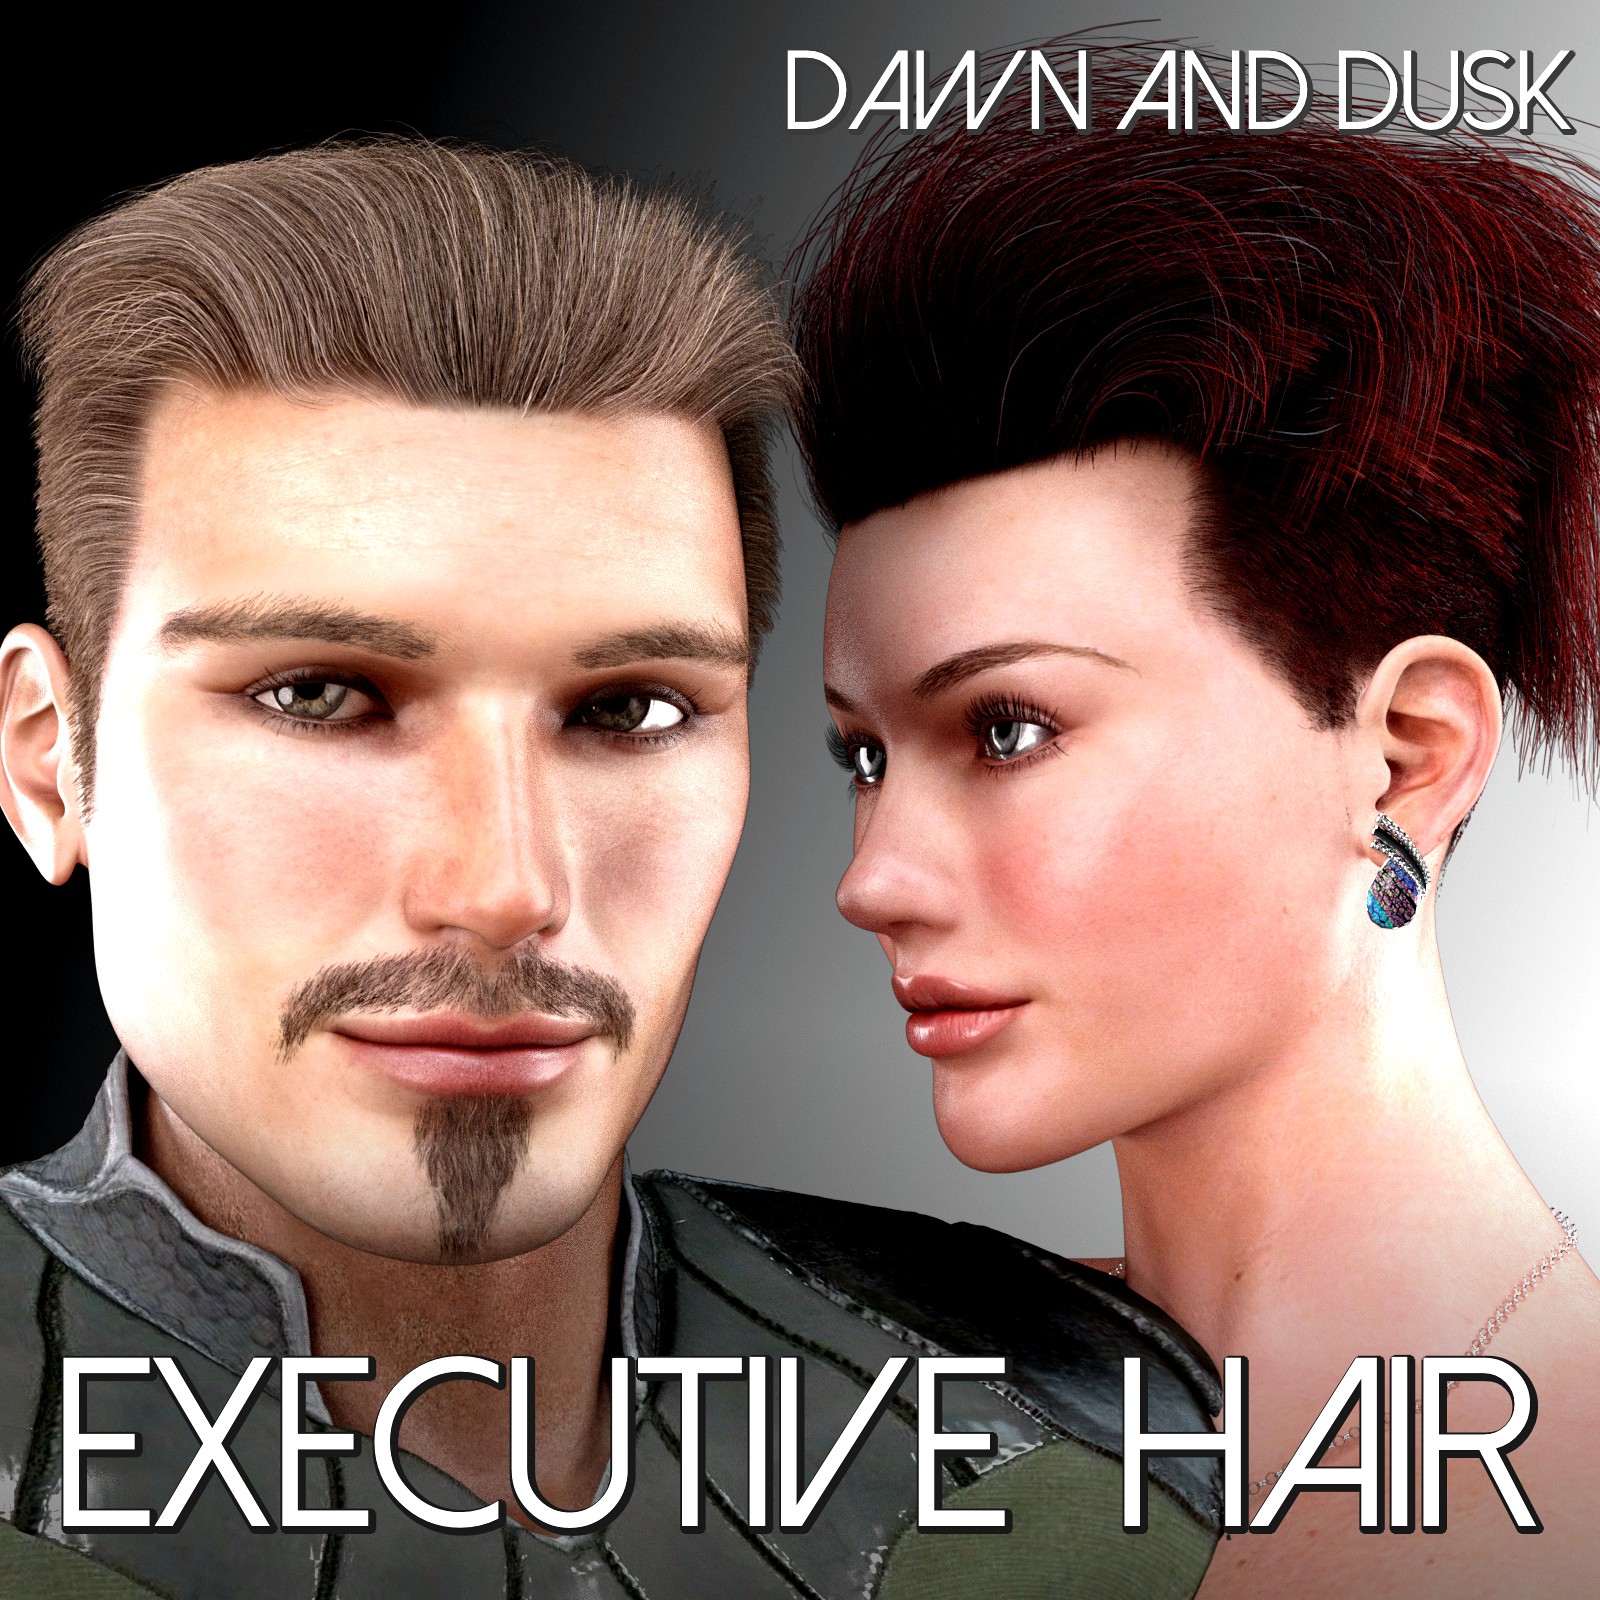 Executive Hair for Dawn and Dusk